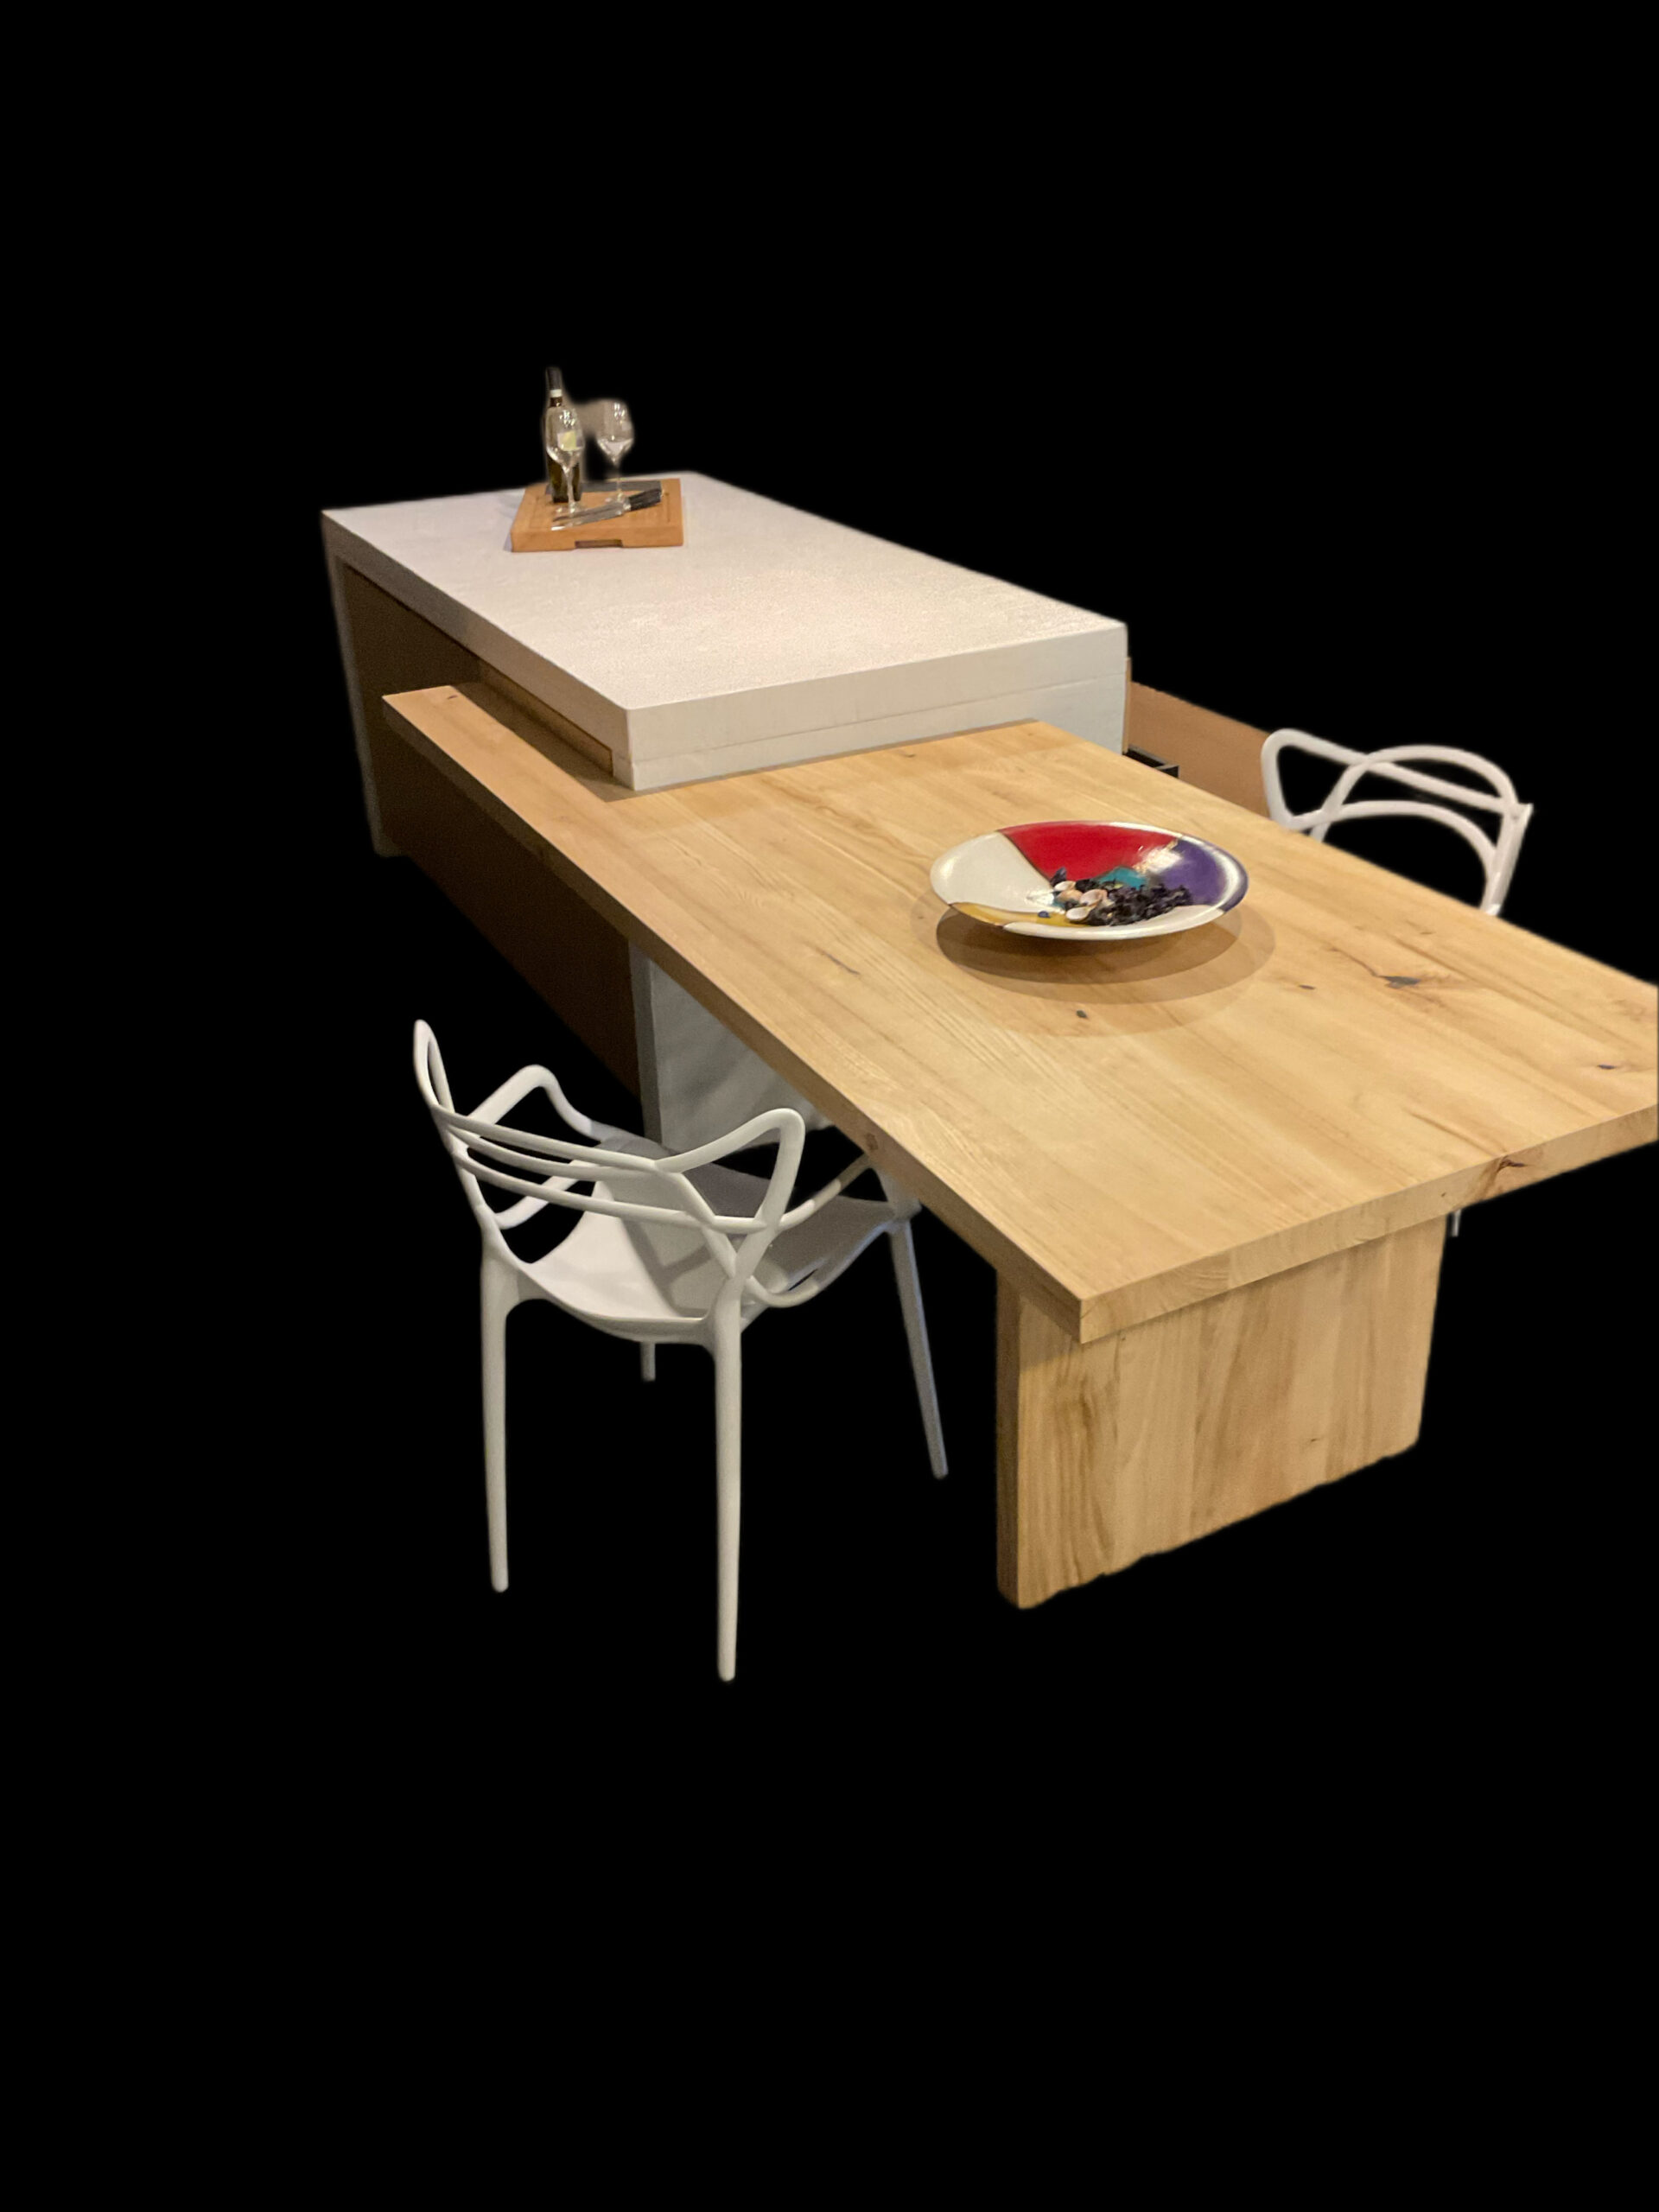 ARREDAMENTO E DINTORNI: isola cucina con tavolo integrato  Kitchen decor  modern, Modern kitchen design, House interior